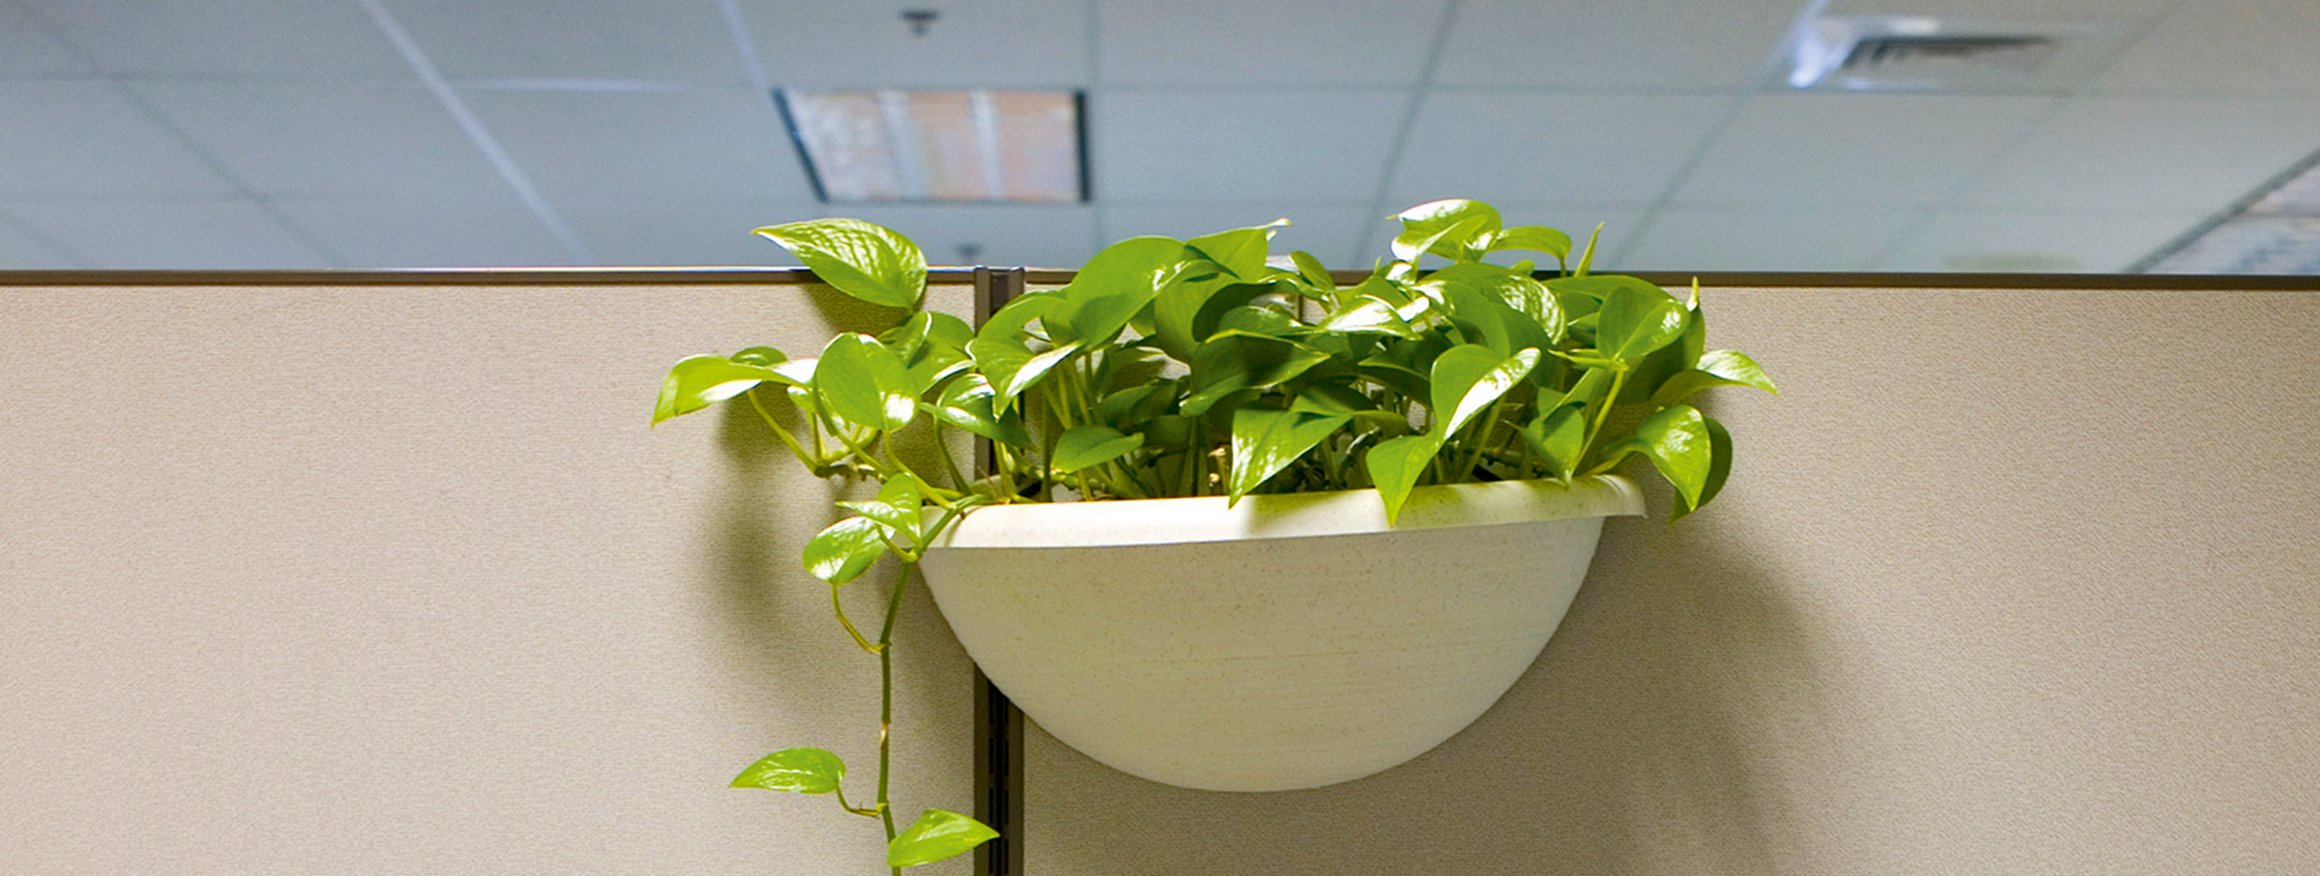 Eine Grünpflanze hängt an einer Trennwand im Großraumbüro